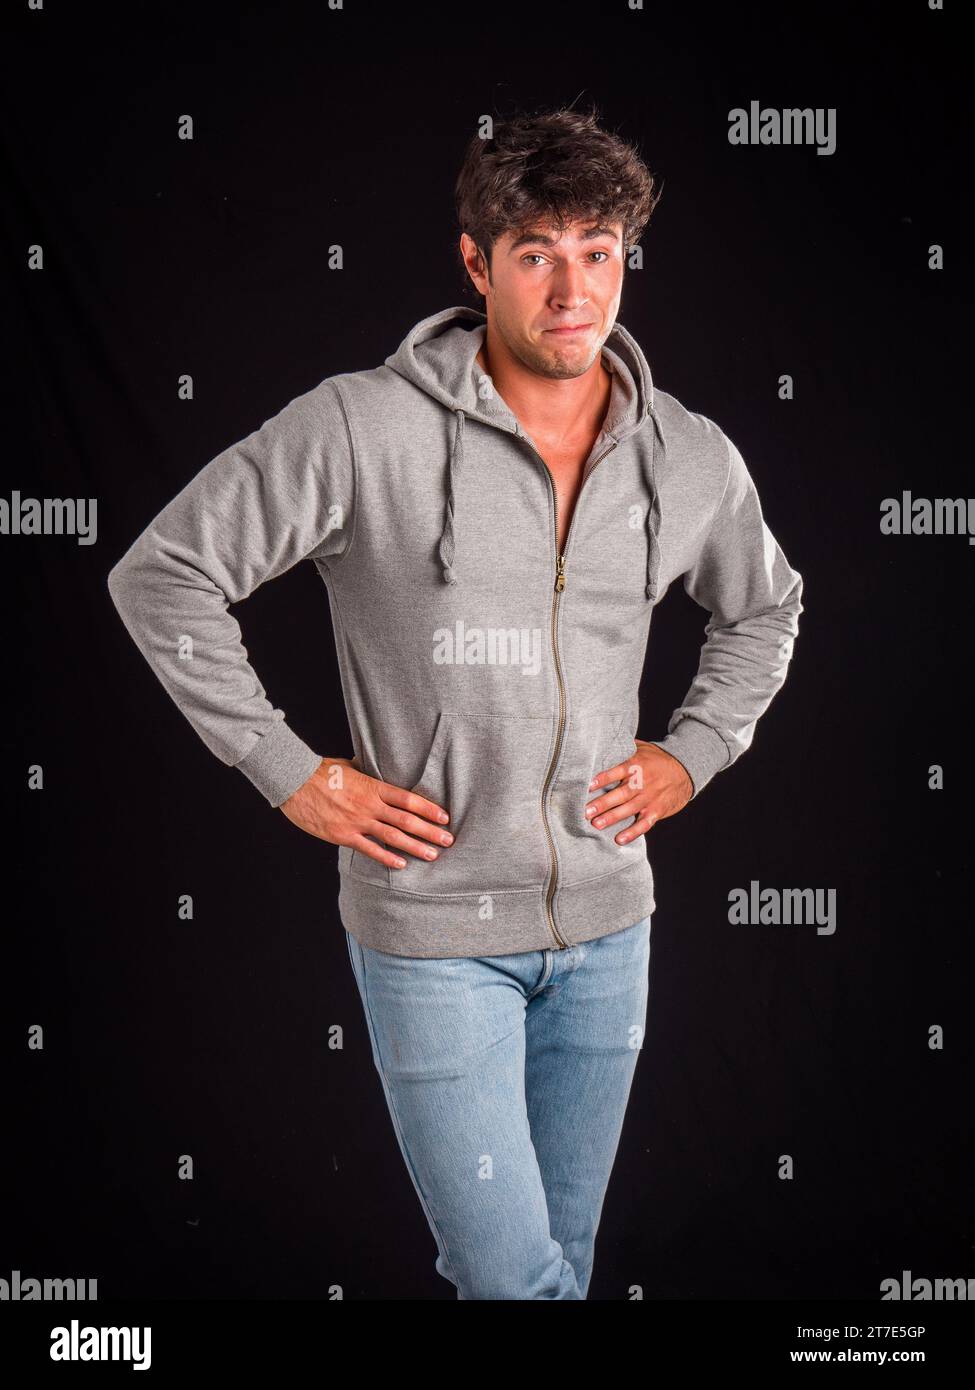 Ein Mann in einem grauen Hoodie posiert für ein Bild Stockfoto